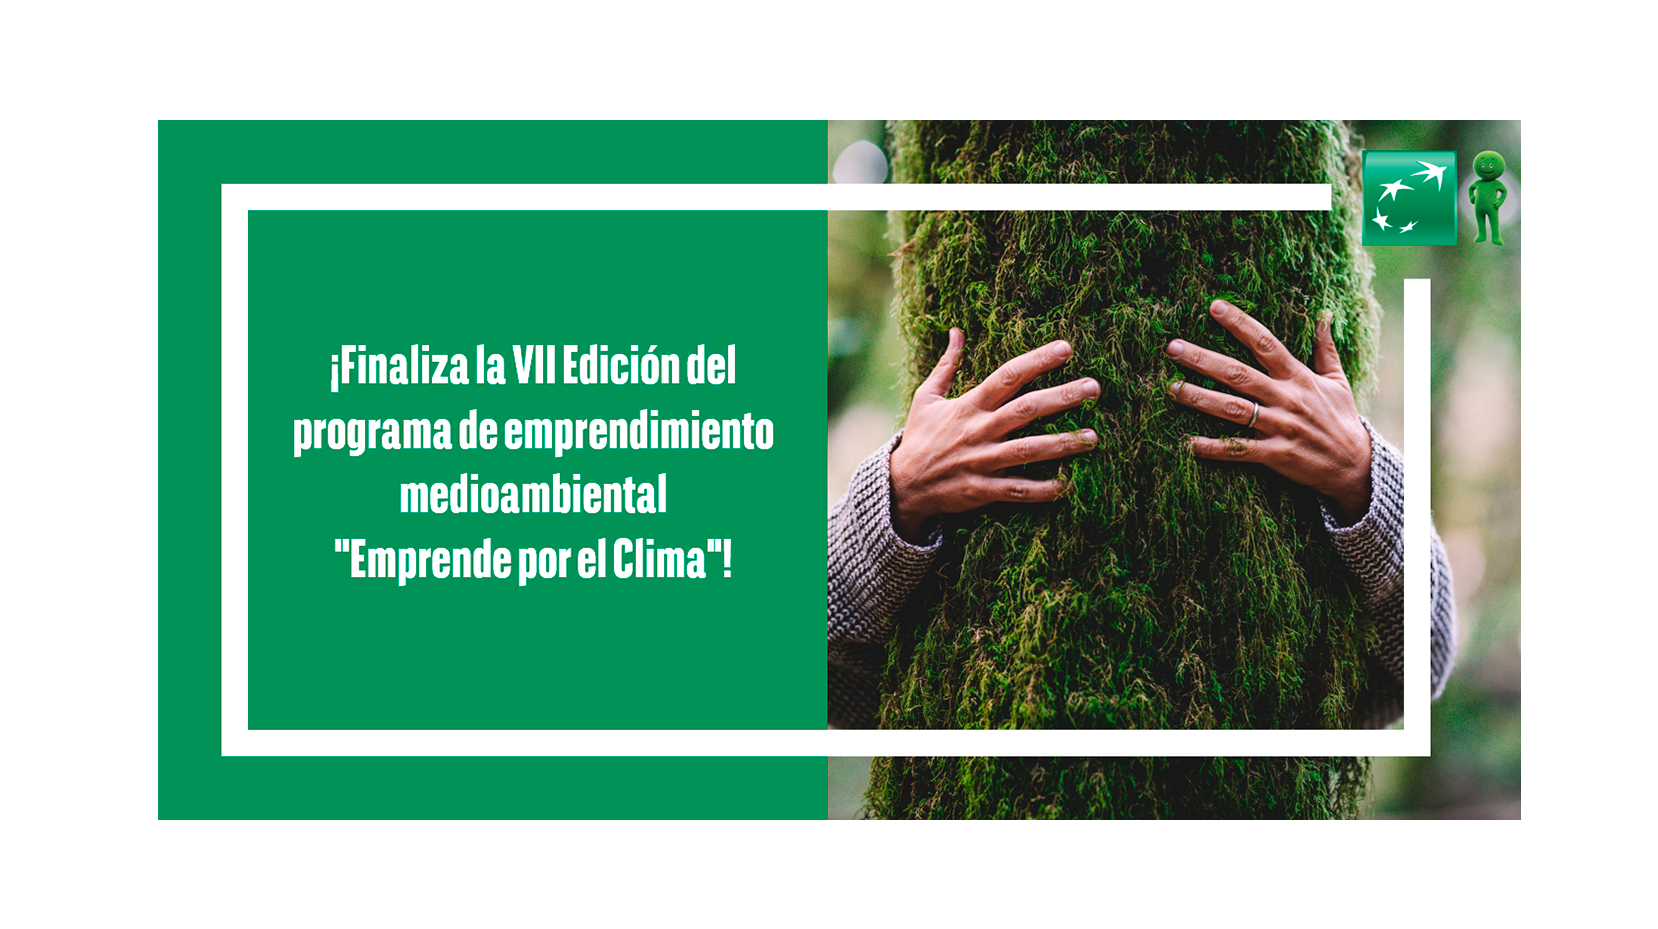 El Grupo BNP Paribas en España vuelve a apoyar el emprendimiento medioambiental en la VII edición de “Emprende por el Clima”